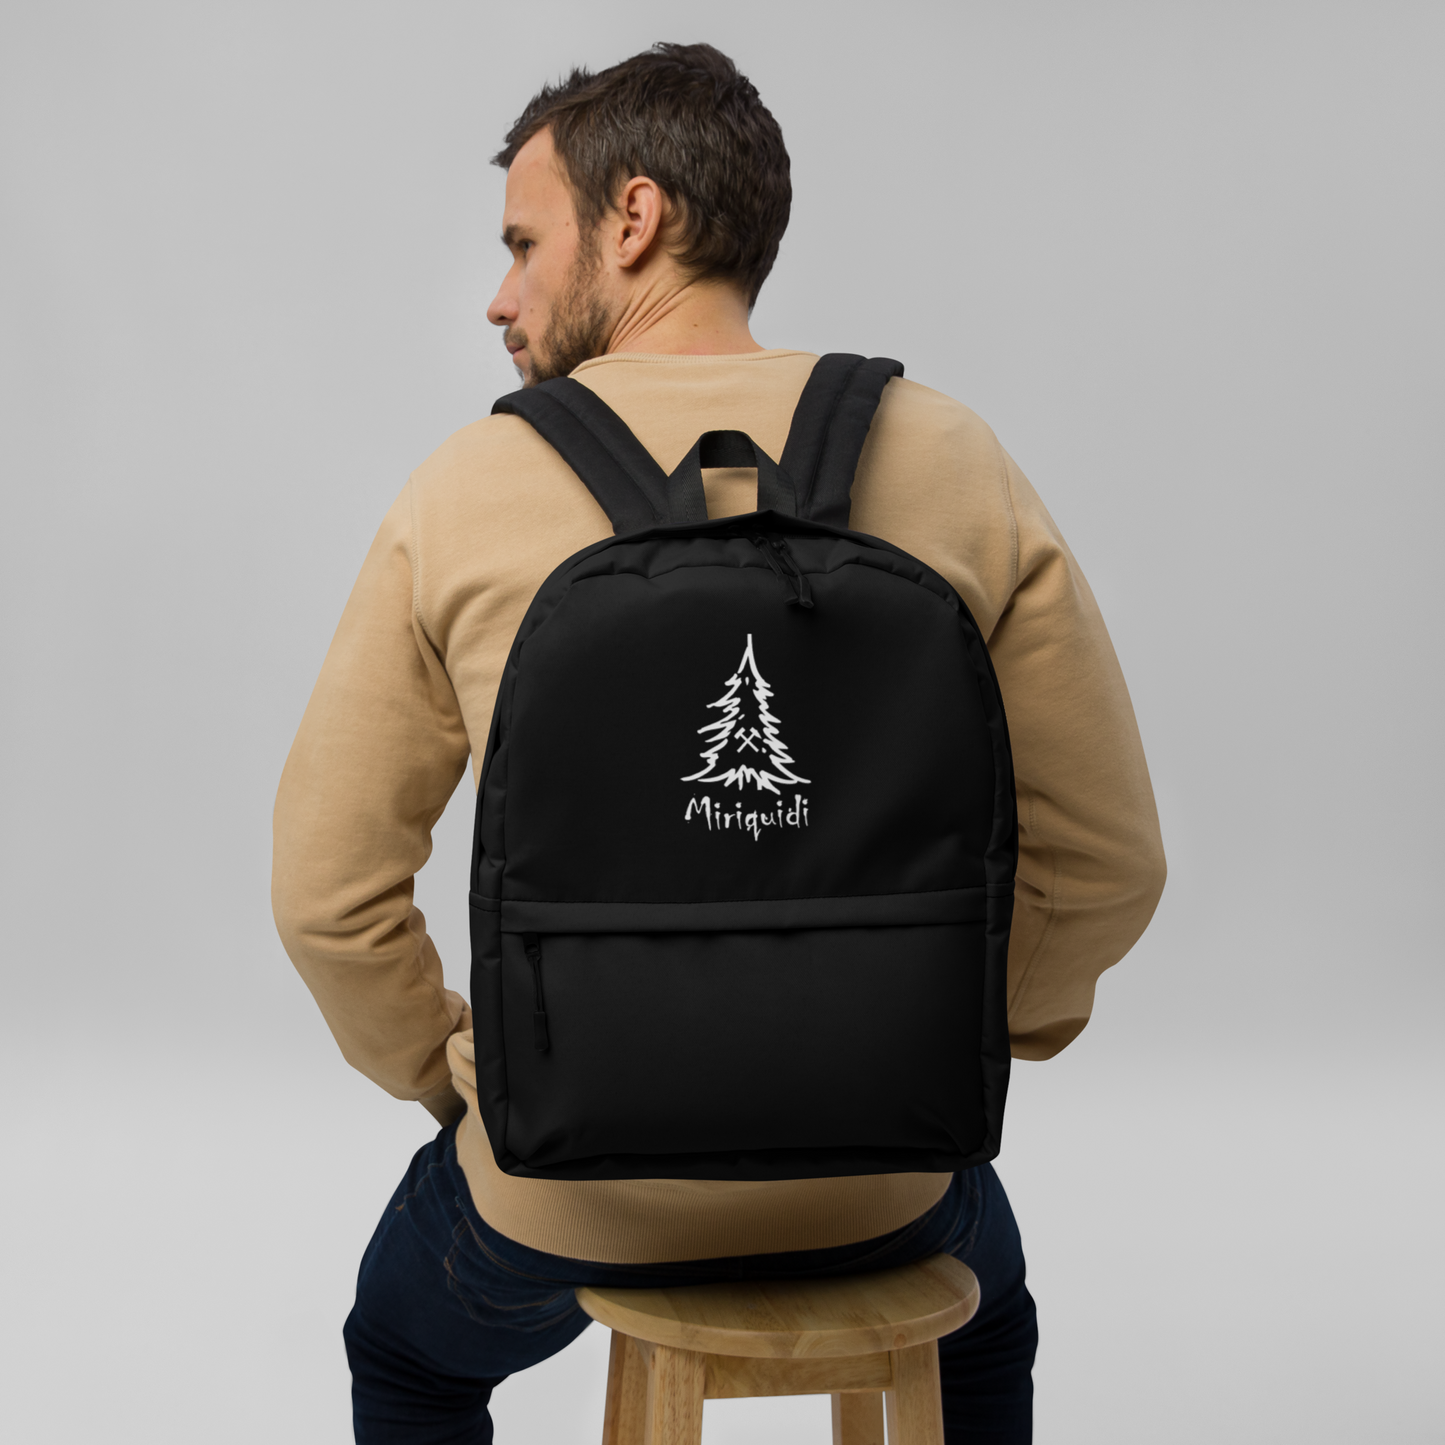 Basic Miriquidi Backpack